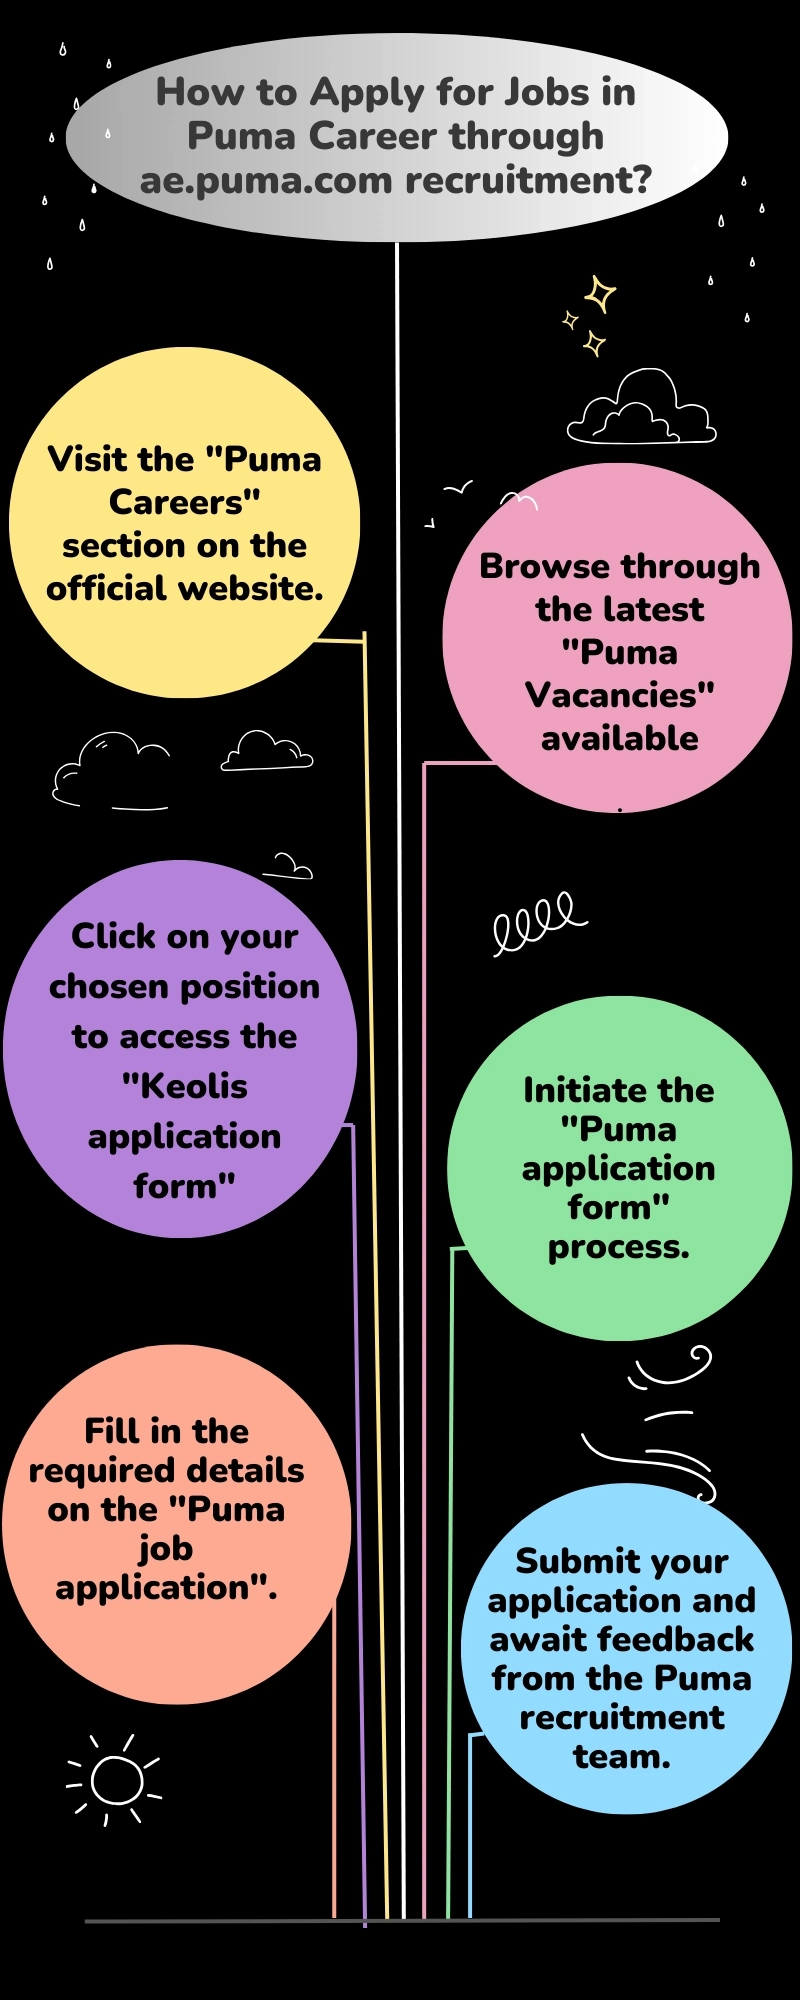 How to Apply for Jobs in Puma Career through ae.puma.com recruitment?